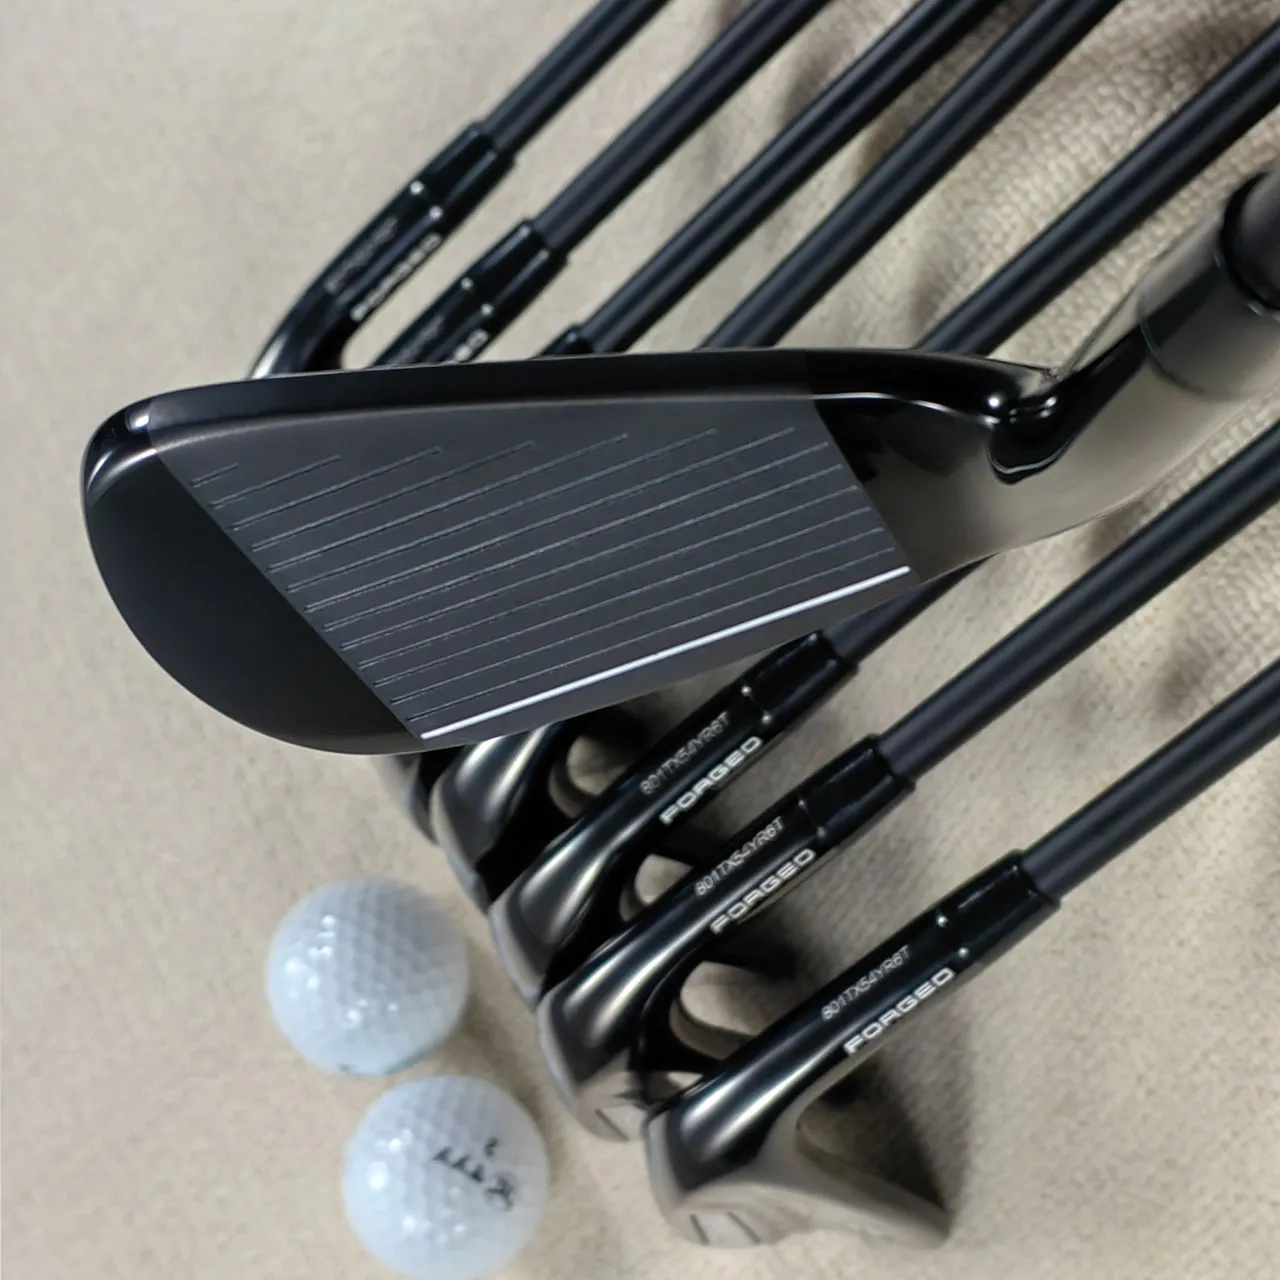 790 golf ütüleri bireysel veya golf ütüler erkekler için ayarlanmış 4-9ps veya sürüş ütüleri sağ el çelik şaft düzenli esnek golf kulüpleri